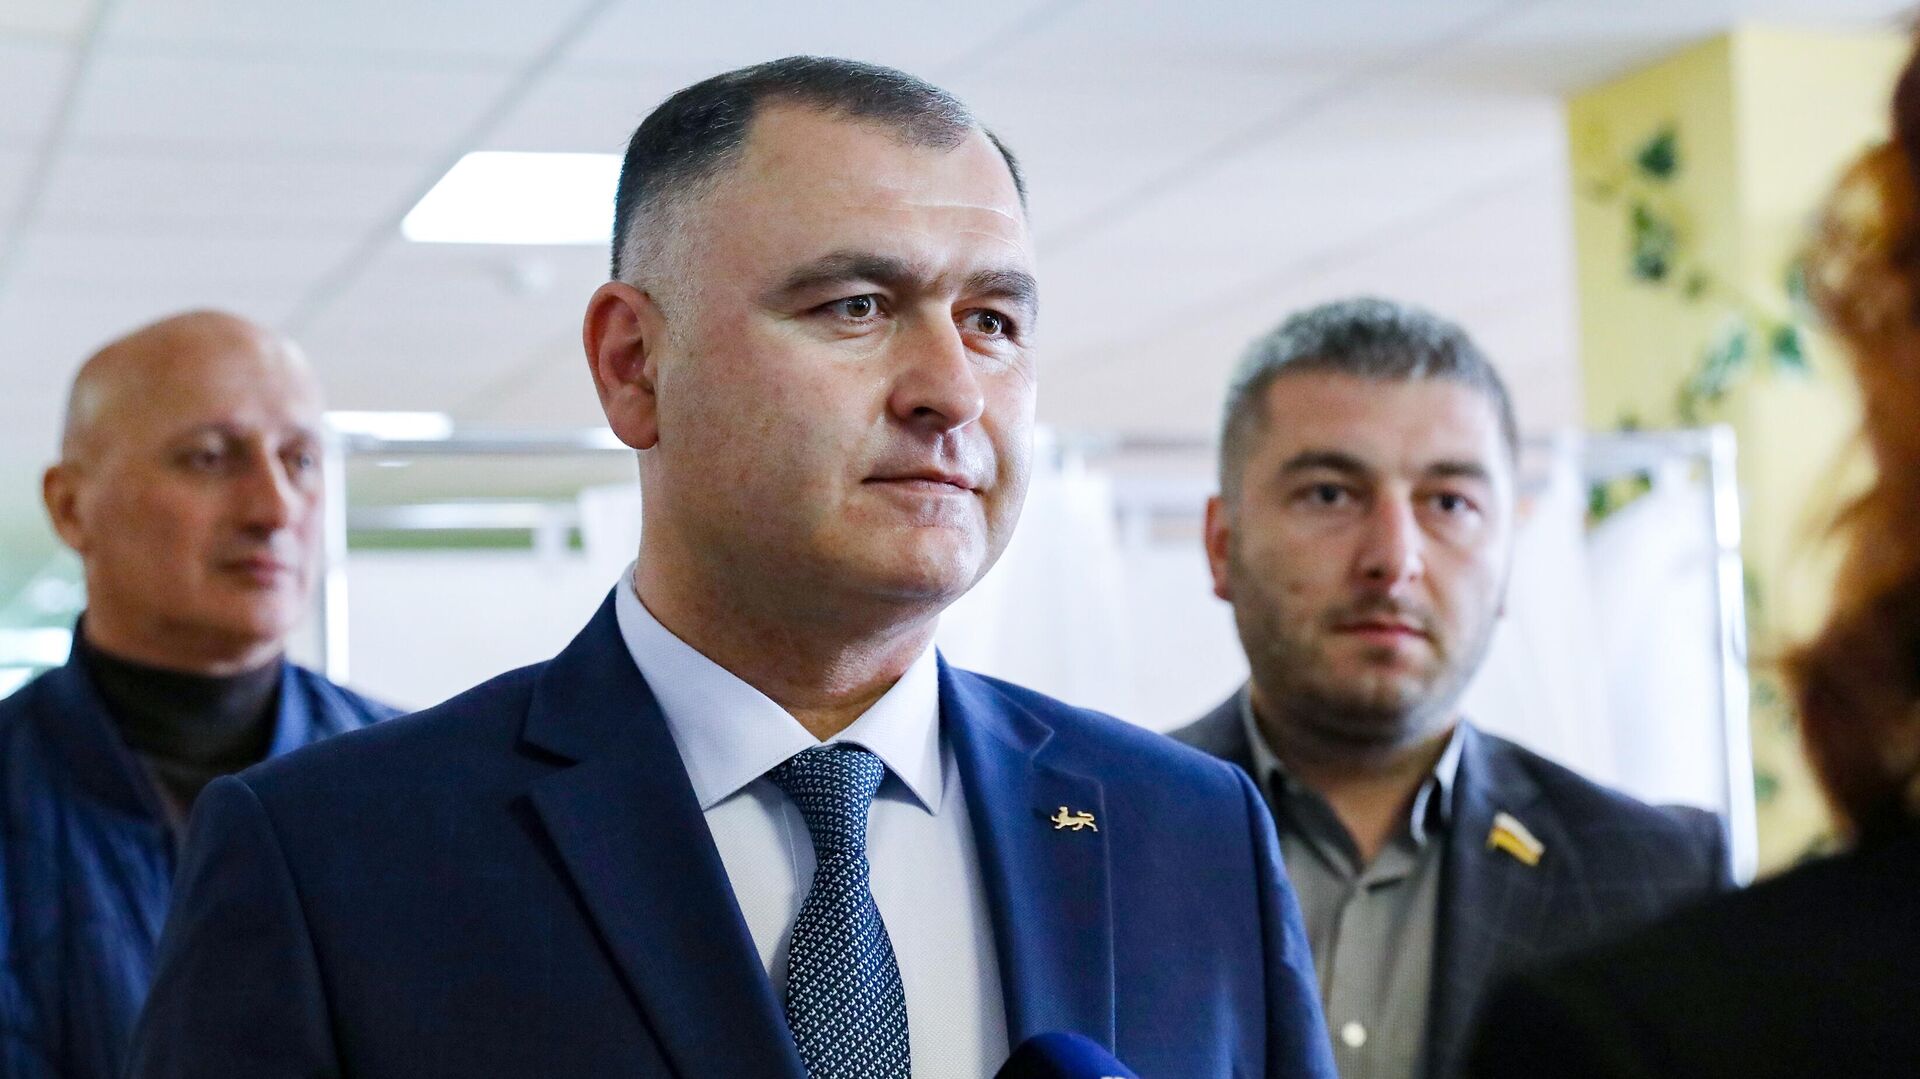 Референдум будет по согласию с Россией — избранный президент Южной Осетии  